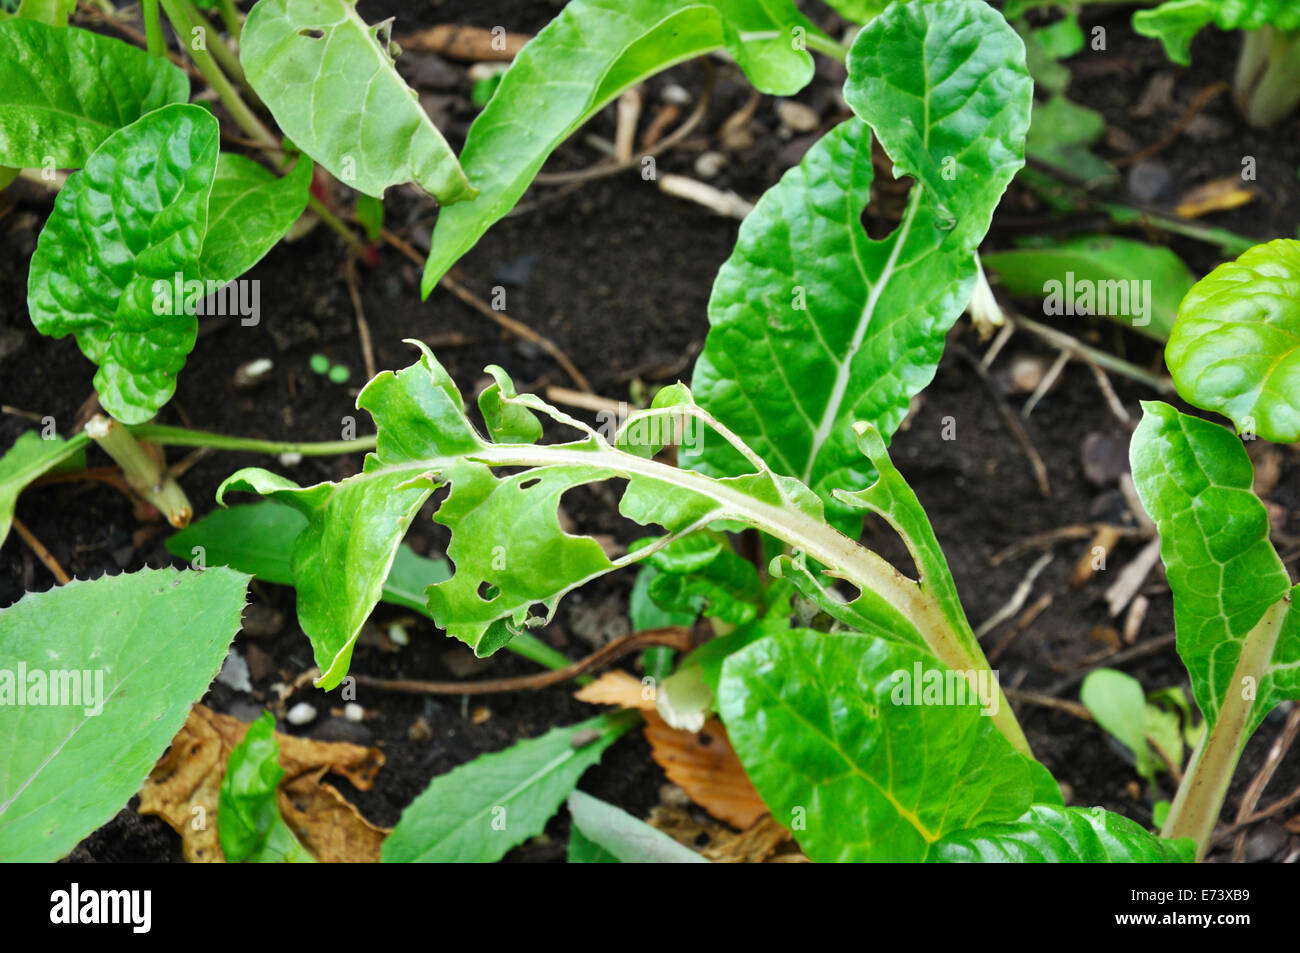 Las hojas verdes de berza comidos por bugs Foto de stock